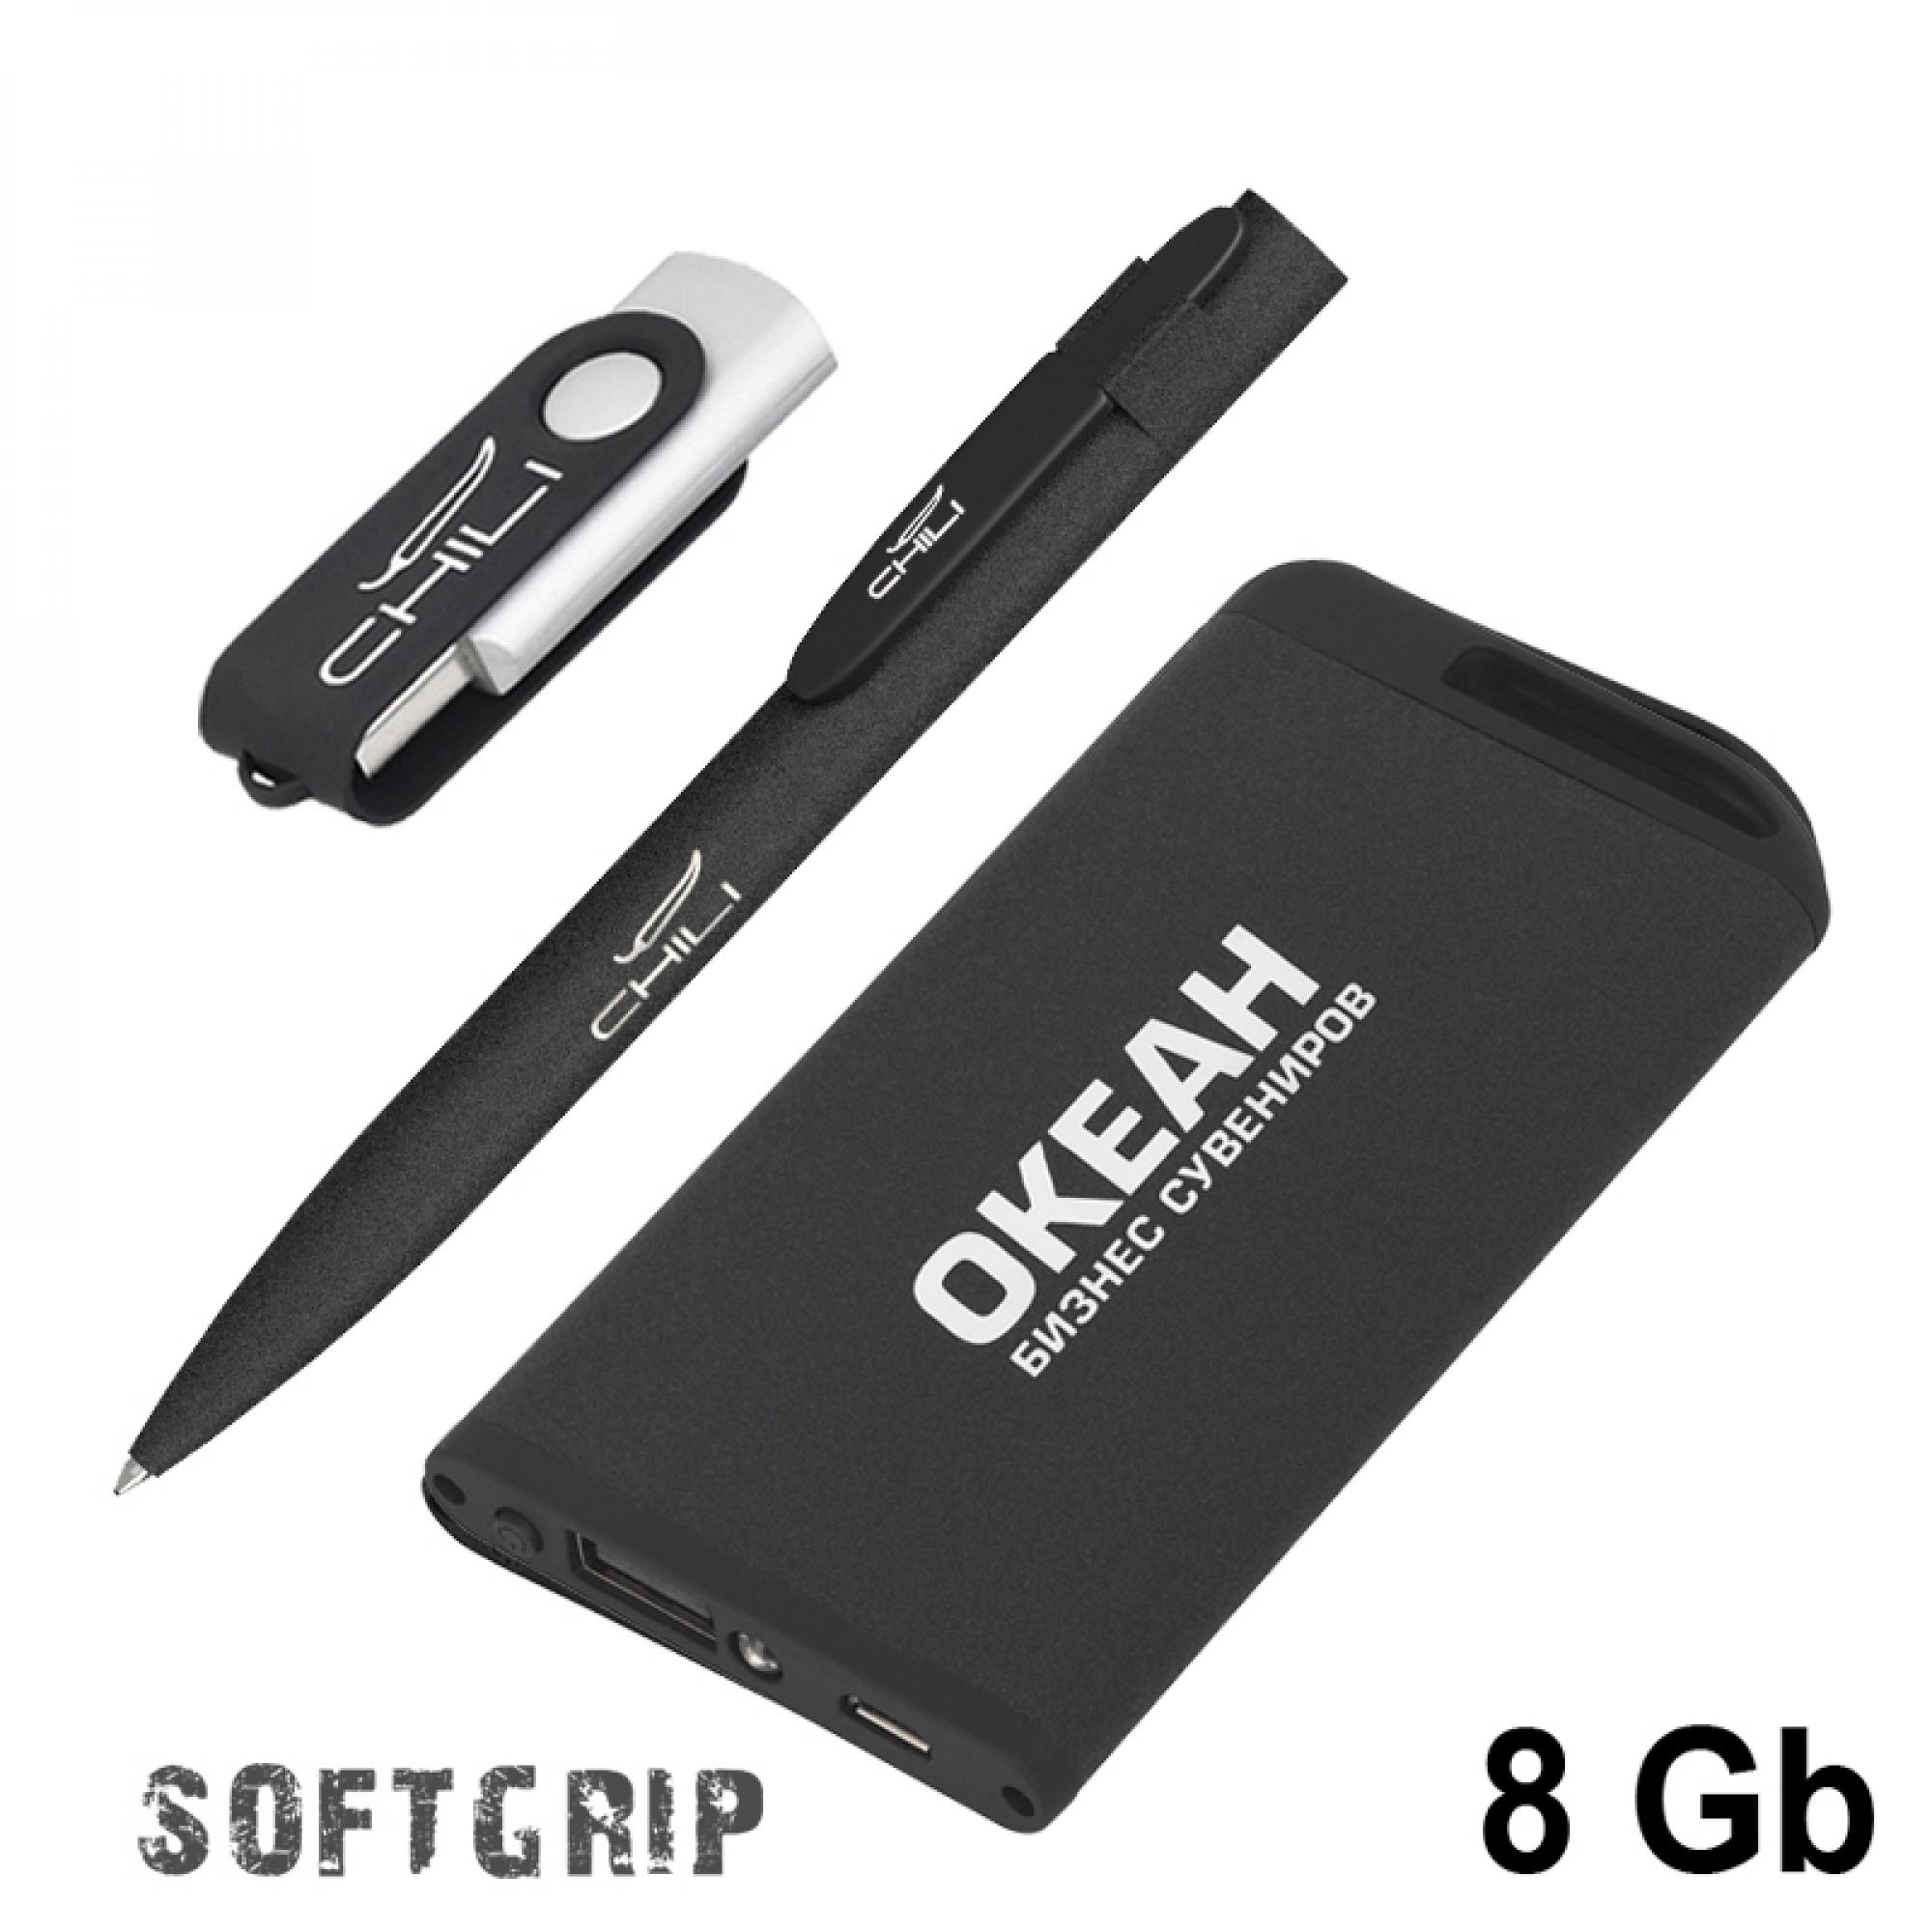 Набор ручка + флеш-карта 8Гб + зарядное устройство 4000 mAh в футляре, покрытие softgrip, цвет черный, фото 1